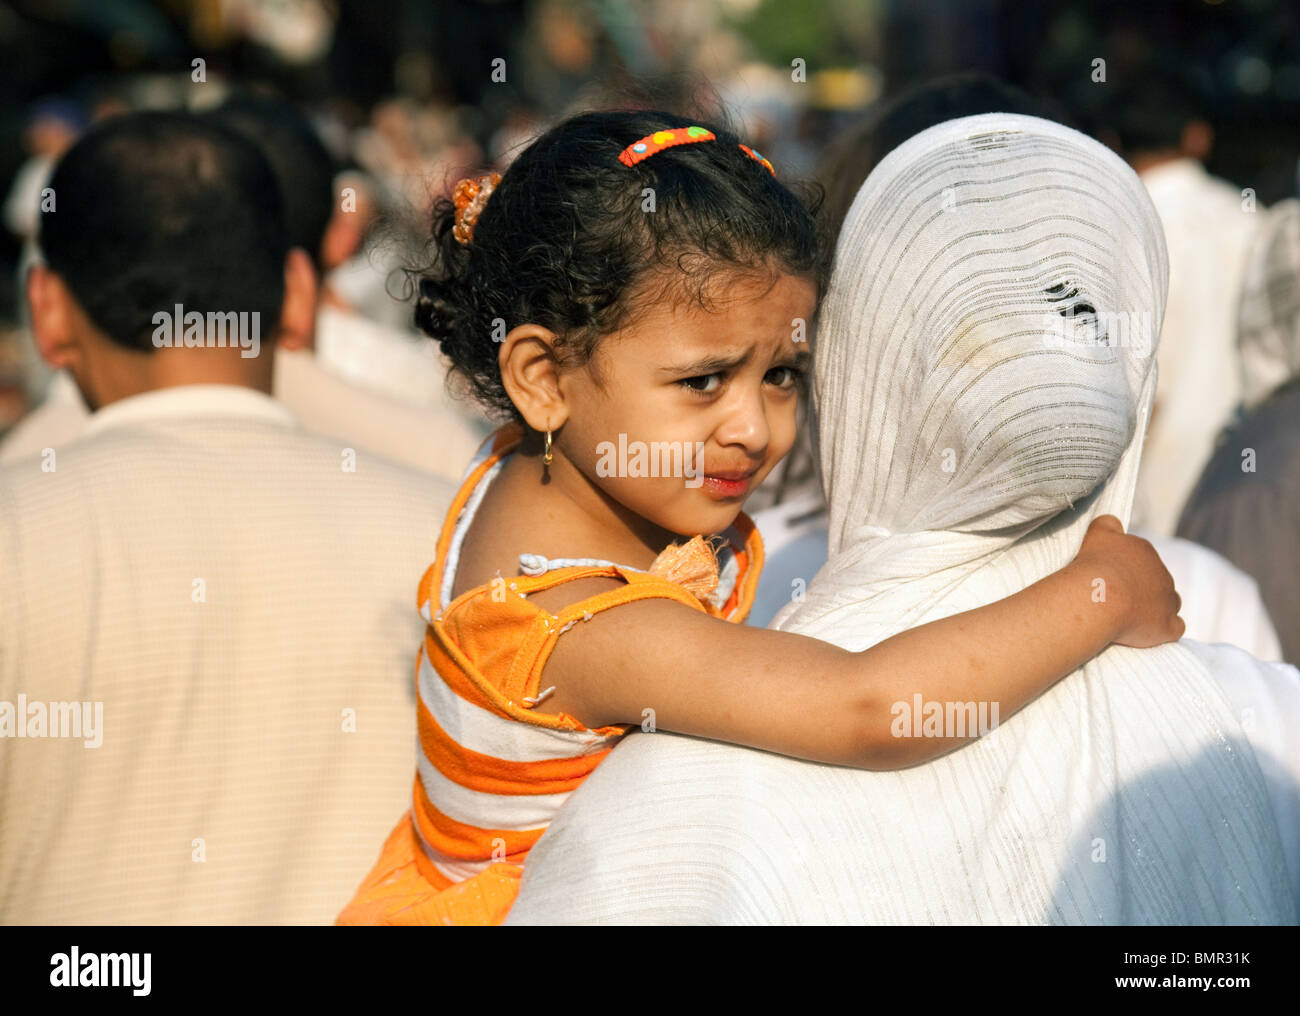 Jeune Fille égyptienne Transportée Par Sa Mère Le Caire Egypte Photo Stock Alamy